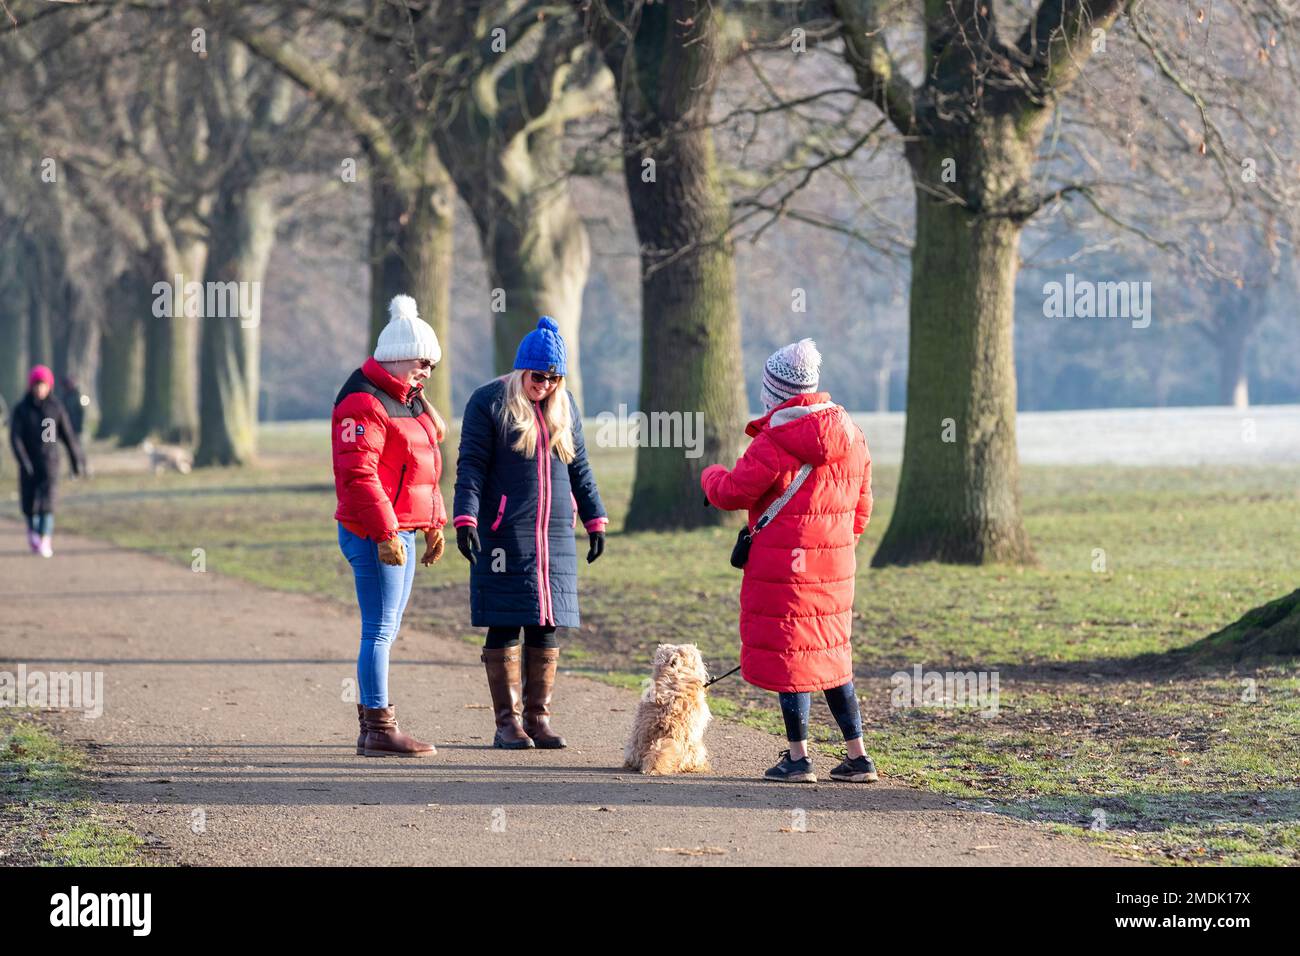 Northampton, Großbritannien. 23. Januar 2023 Ein kalter, frostiger Morgen im Abington Park mit Leuten, die mit ihren Hunden spazieren gehen, gut eingepackt gegen das kalte Wetter. Kredit: Keith J. Smith./Alamy Live News Stockfoto